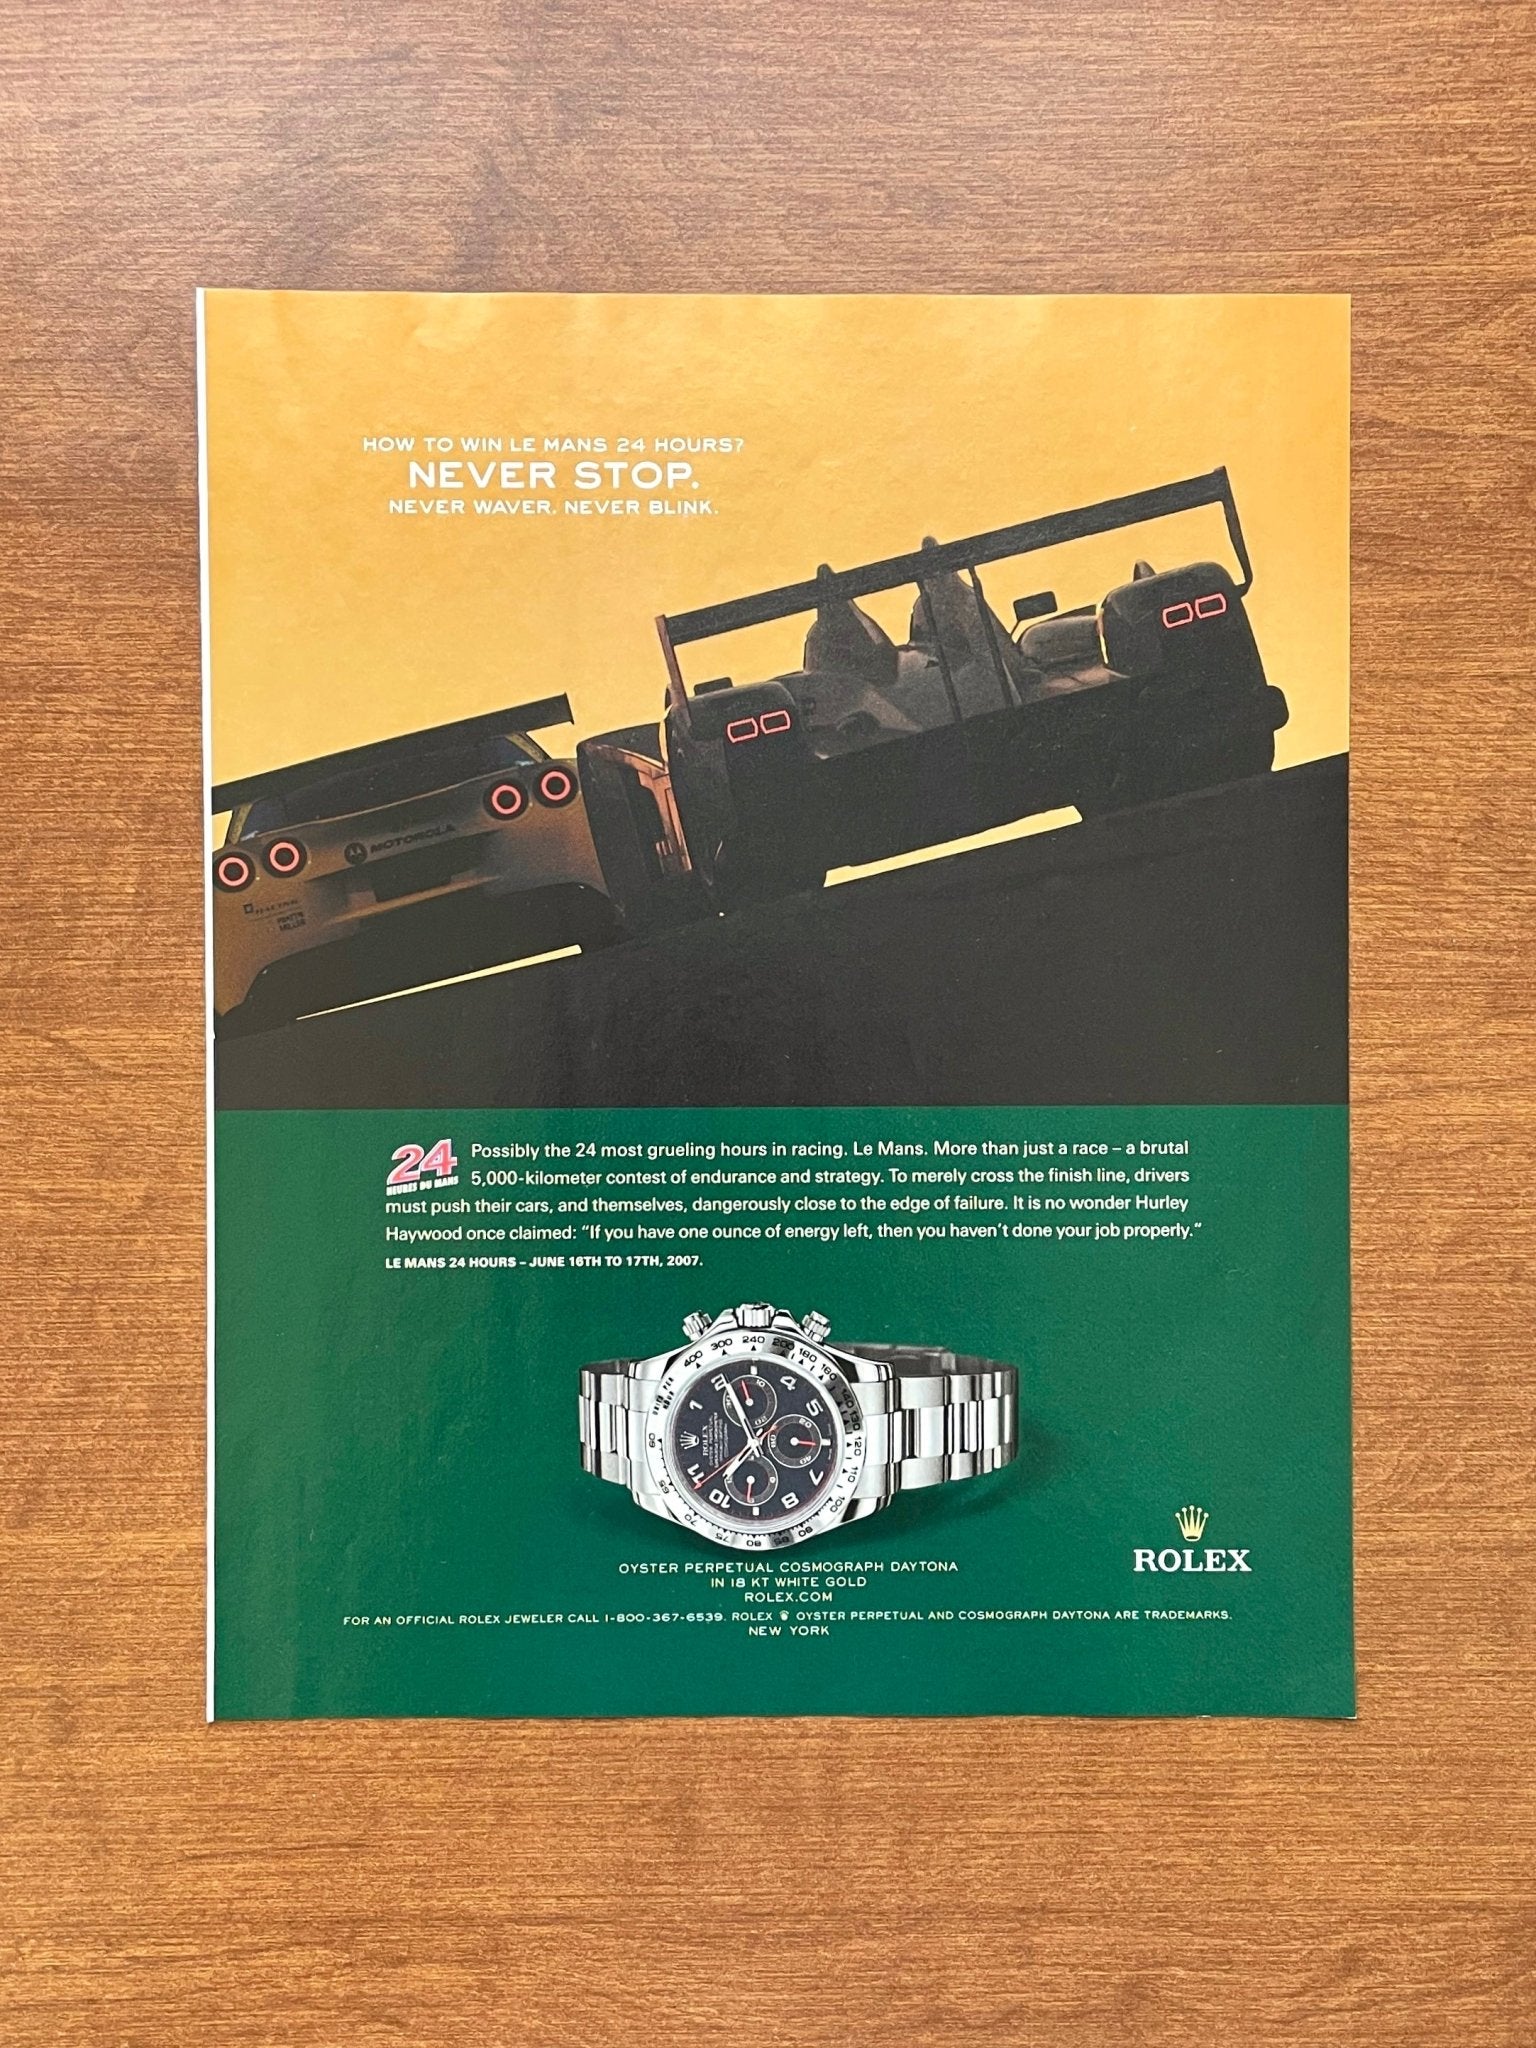 2007 Rolex Daytona Ref. 116509 "Le Mans 24 Hours" Advertisement